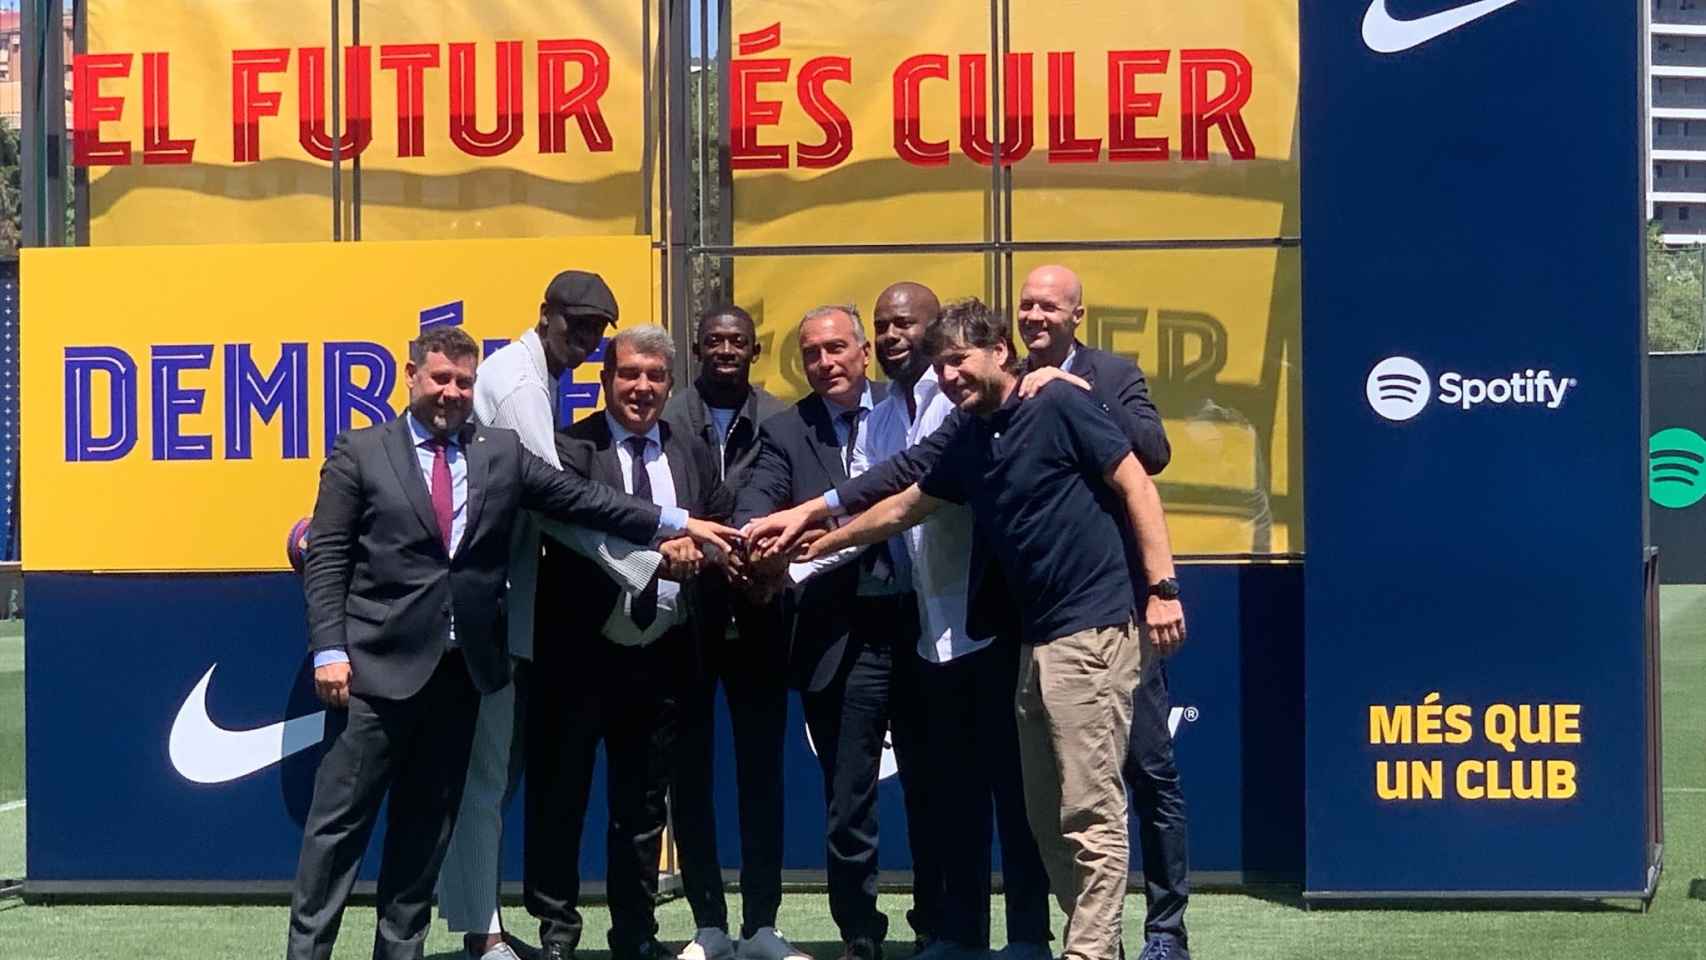 Laporta, Alemany, Cruyff, Moussa Sissoko y todos los implicados en el nuevo fichaje de Dembelé / CULEMANÍA